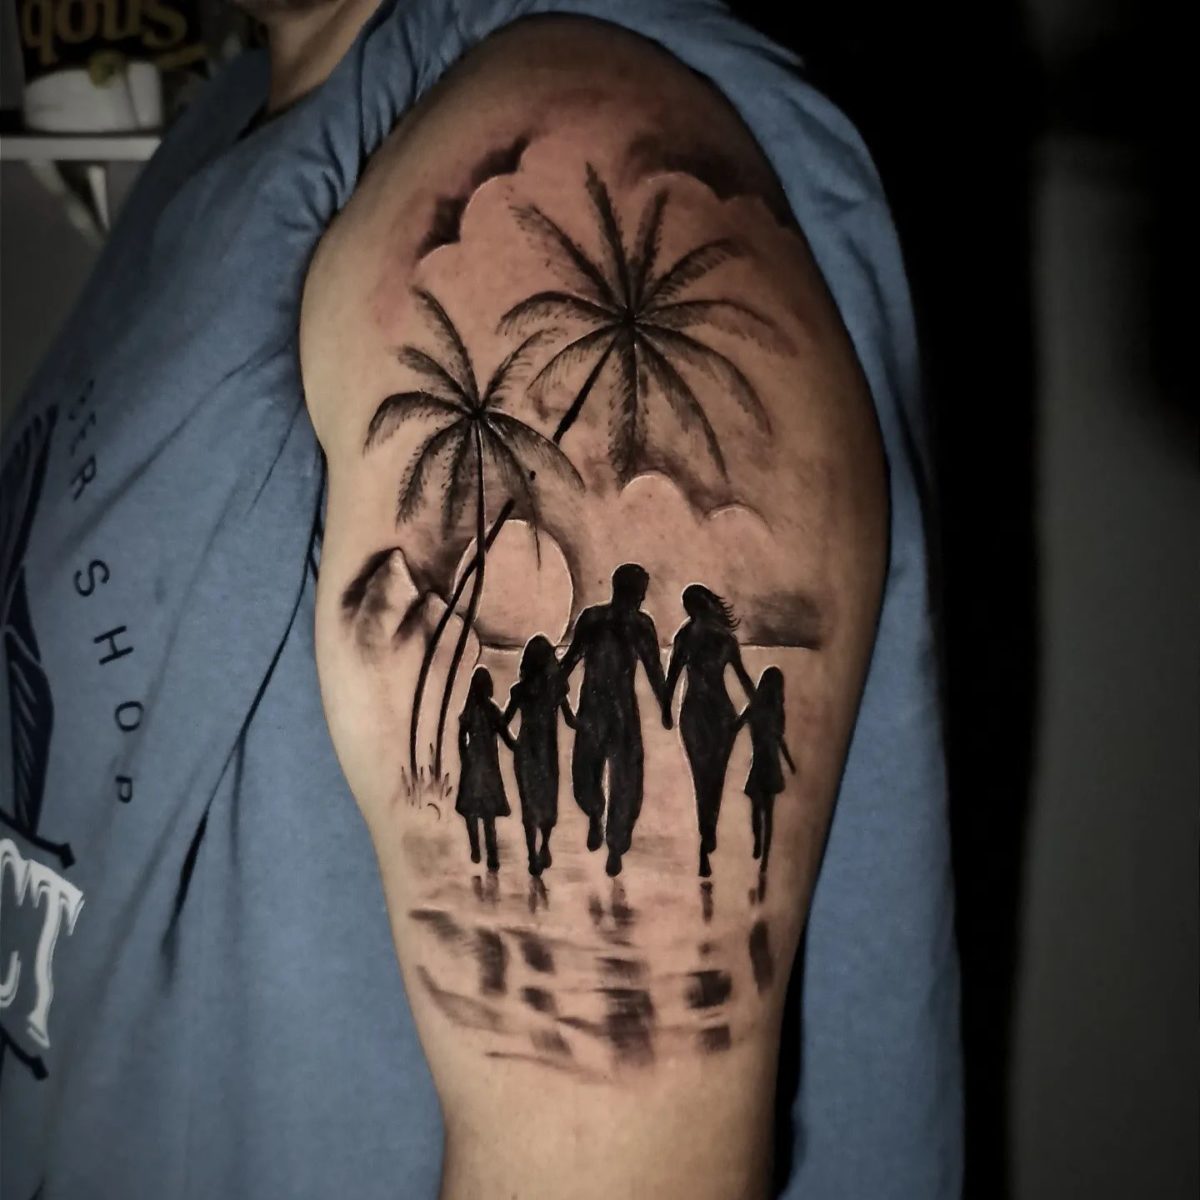 Family Tattoo Ideas